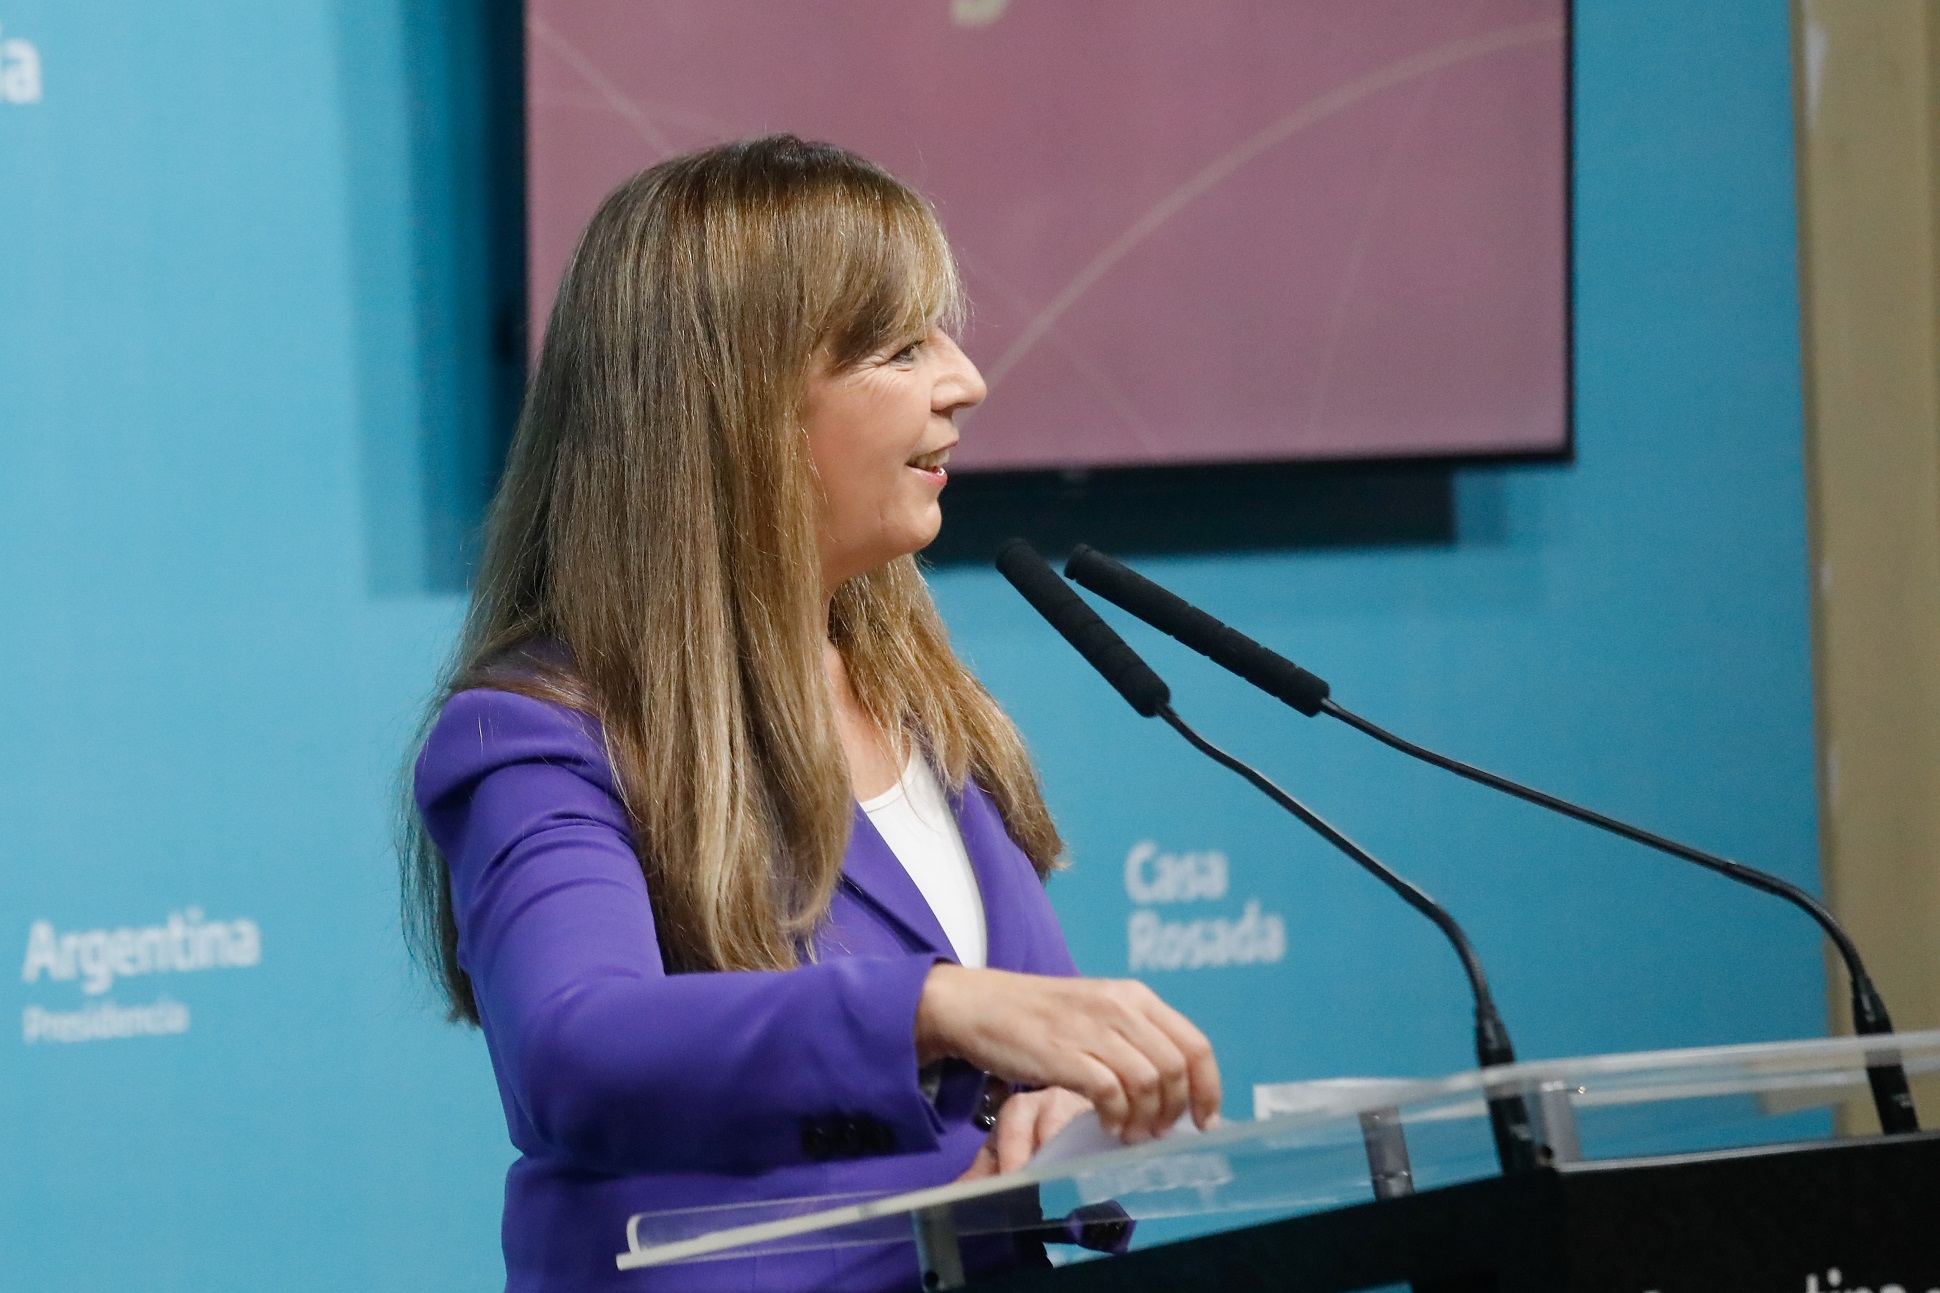 Gabriela Cerruti : El presidente Alberto Fernández entiende que tenemos que construir una Argentina donde profundicemos los acuerdos democráticos”